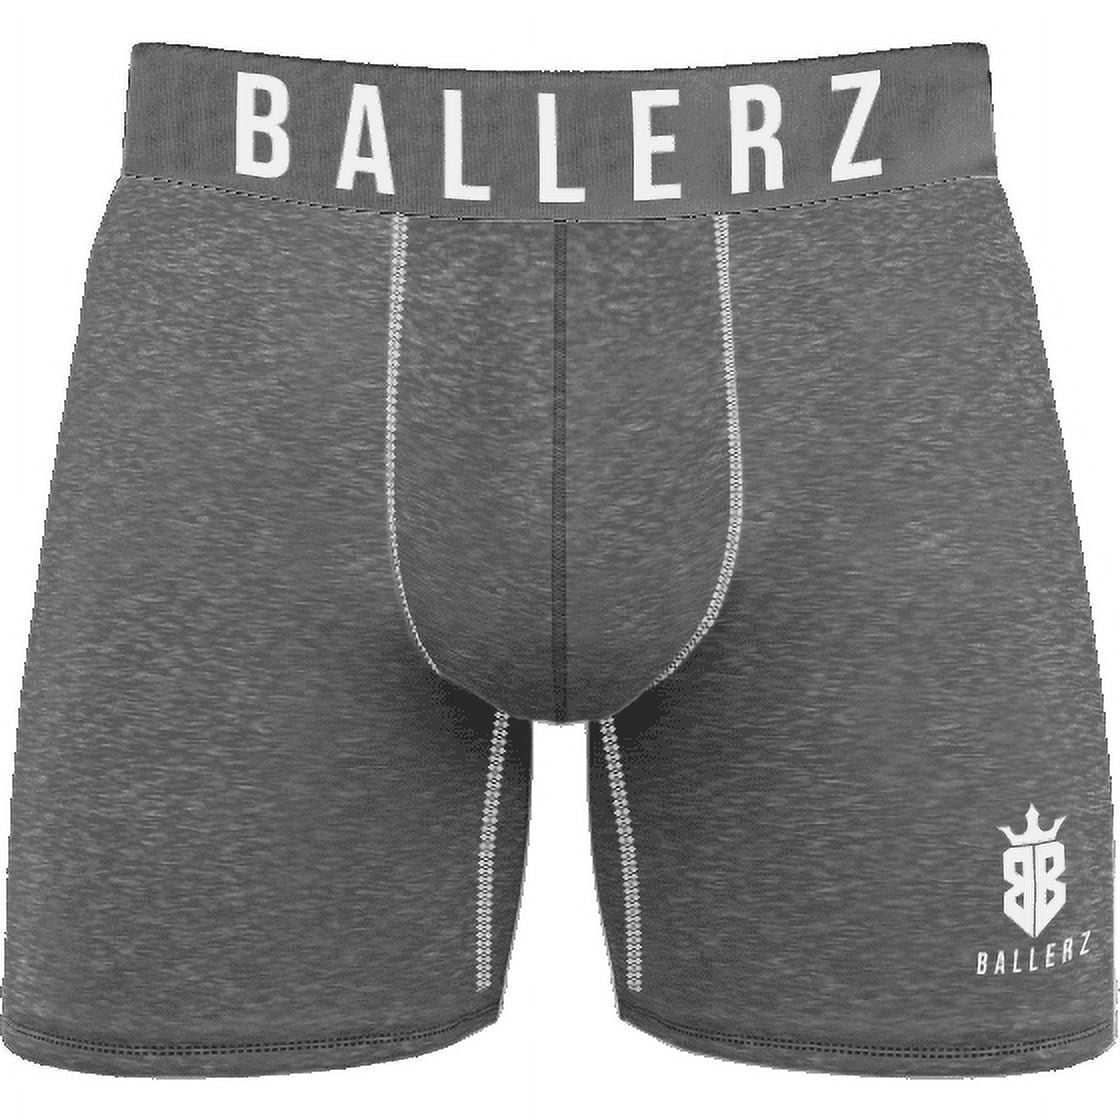 Ballerz Mens Boxer Briefs-Ball Hammock Underwear with Ball Pouch-No Fly 